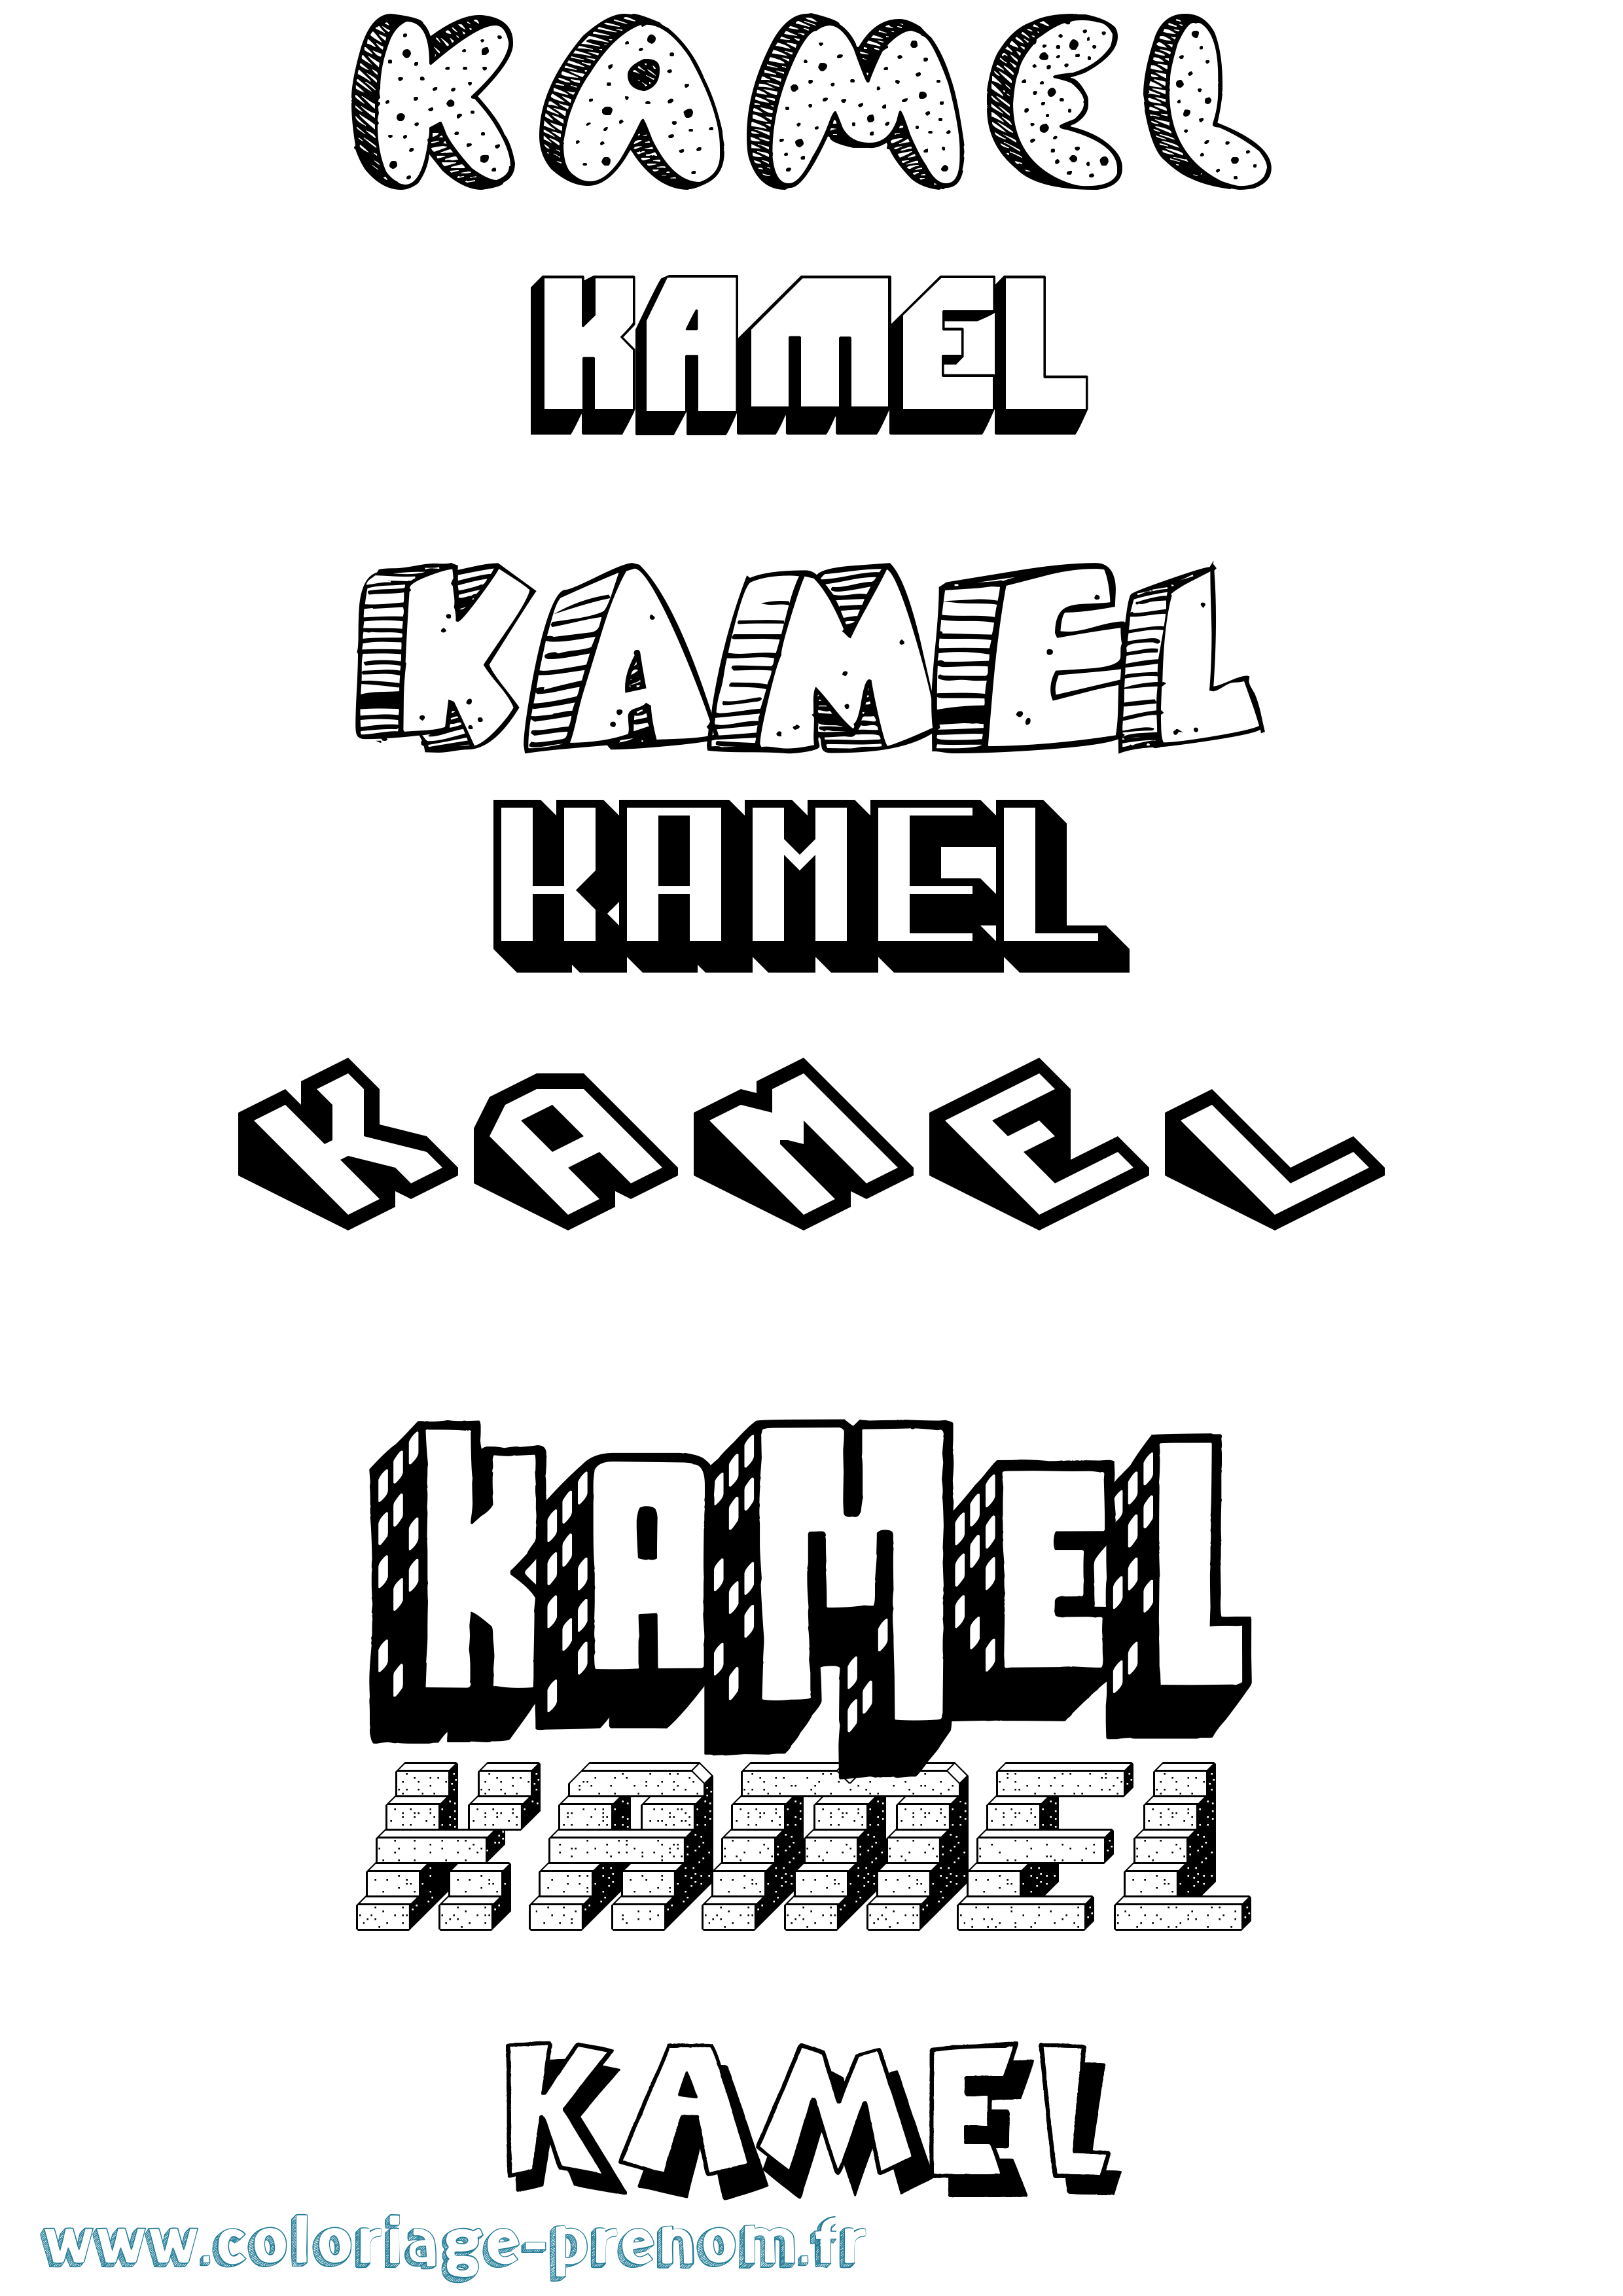 Coloriage prénom Kamel Effet 3D